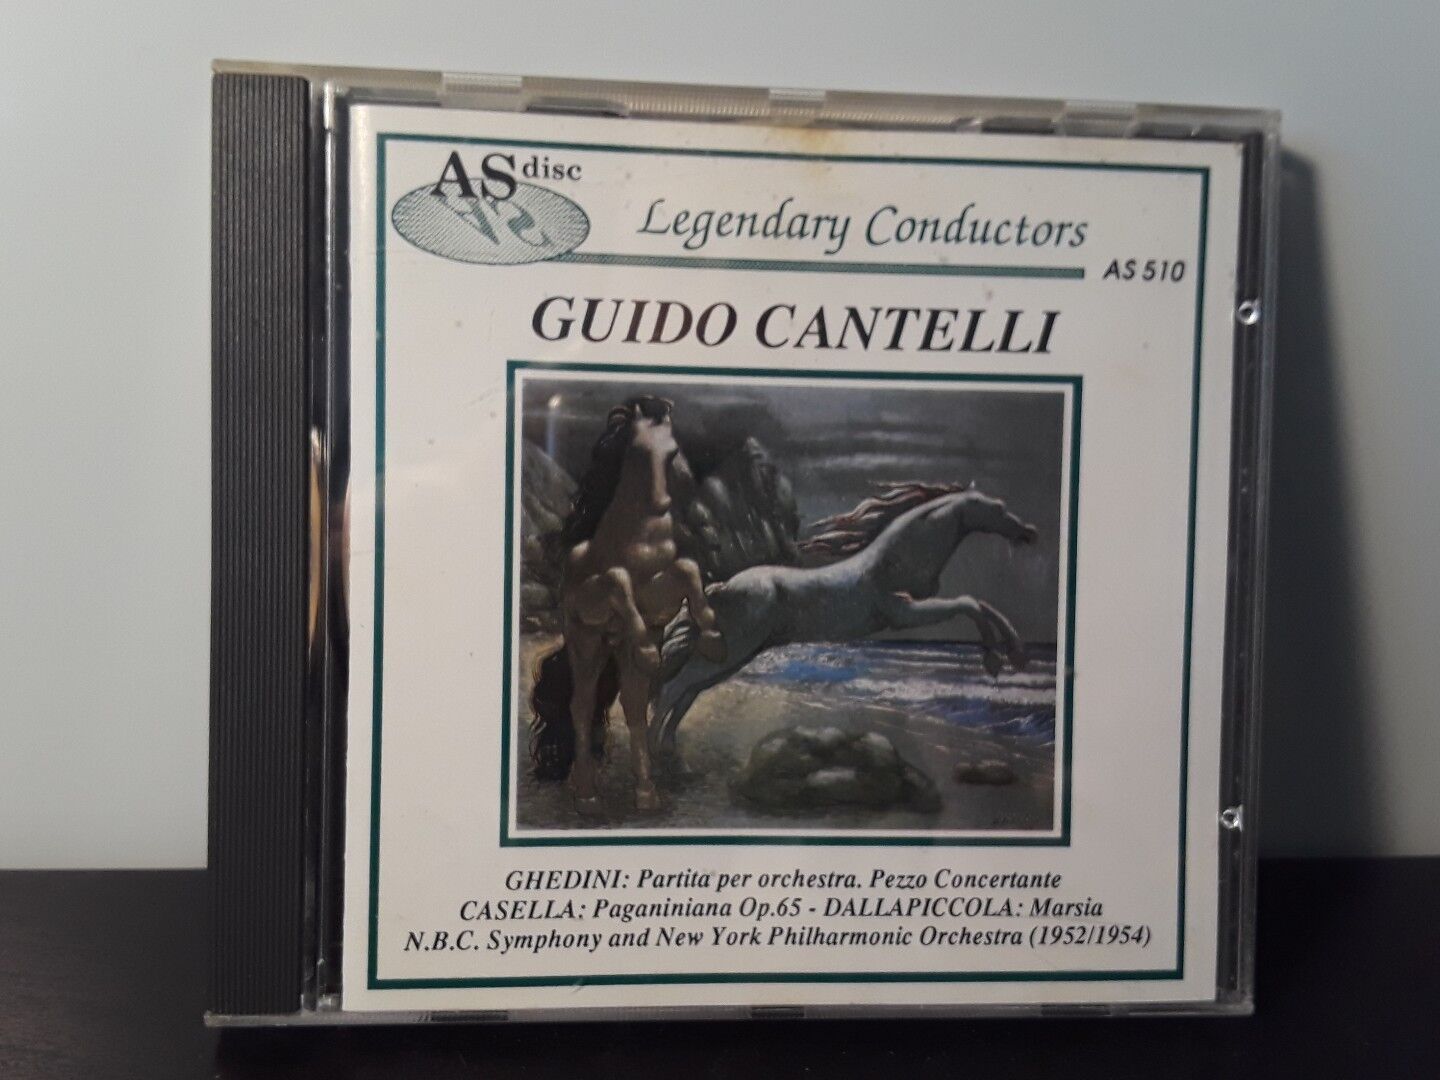 Guido Cantelli - Ghedini/Casella/Dallapiccola (CD, 1989) Made in Italy